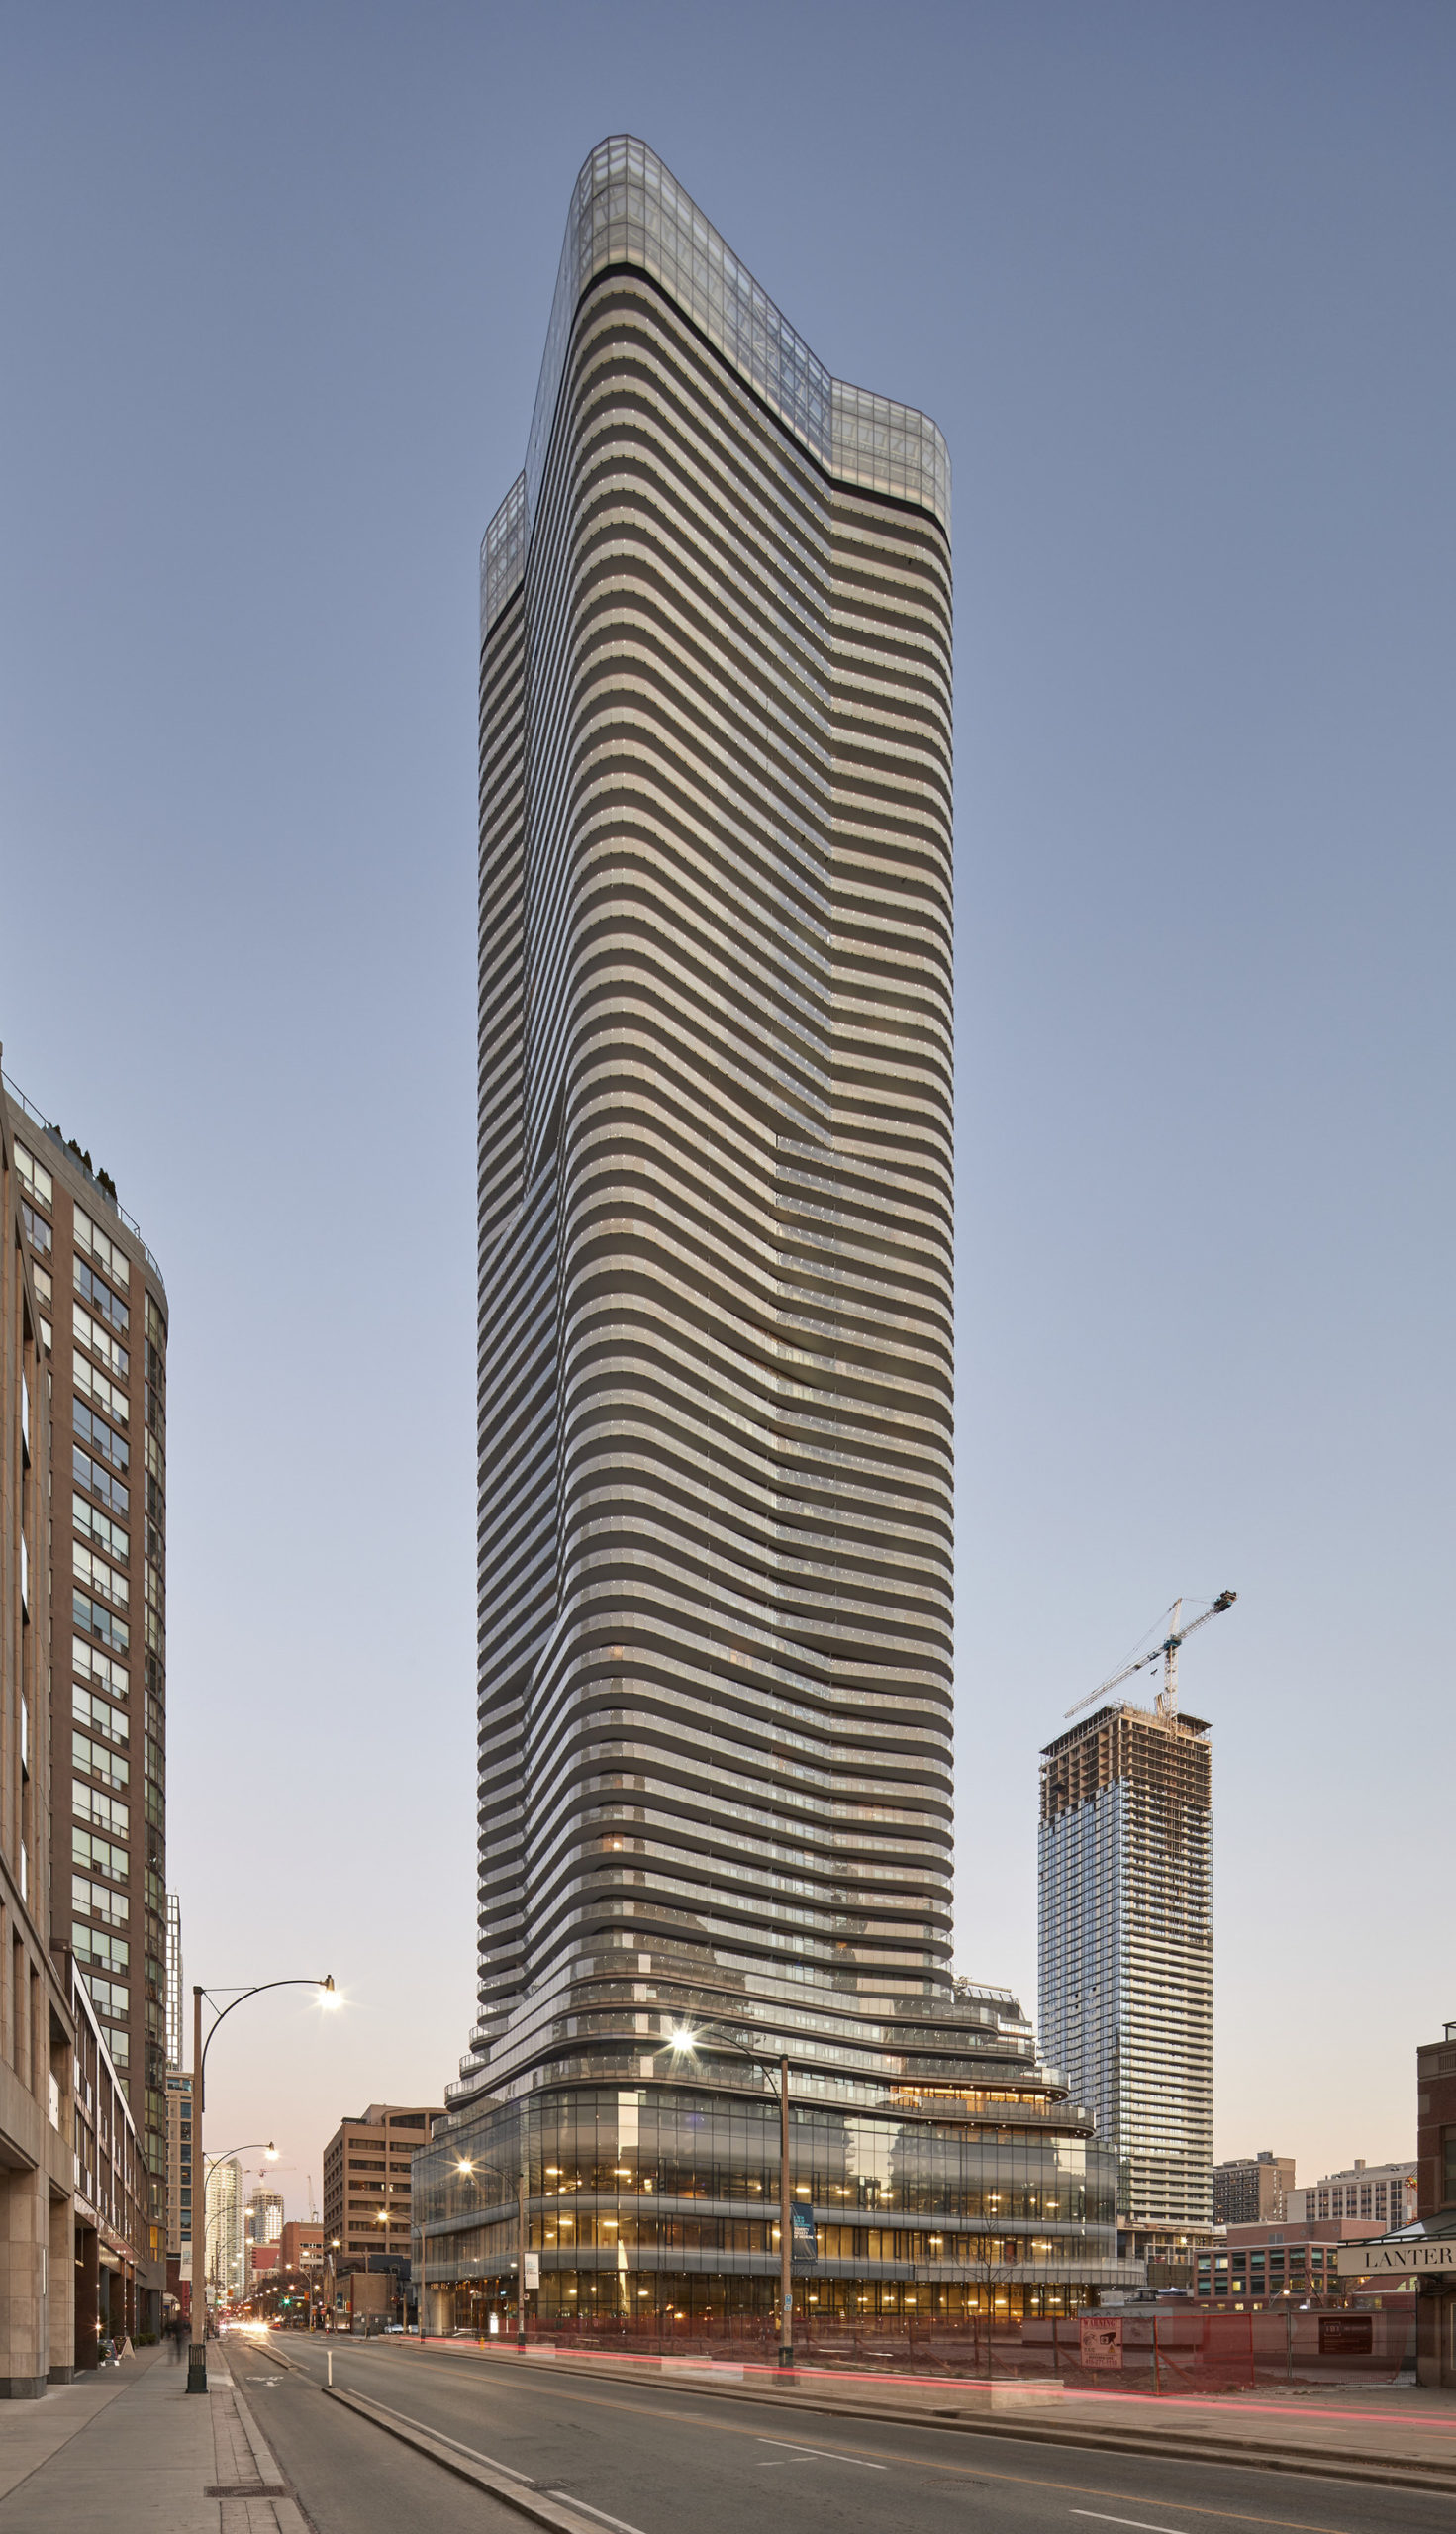 Architecture - Skyscraper